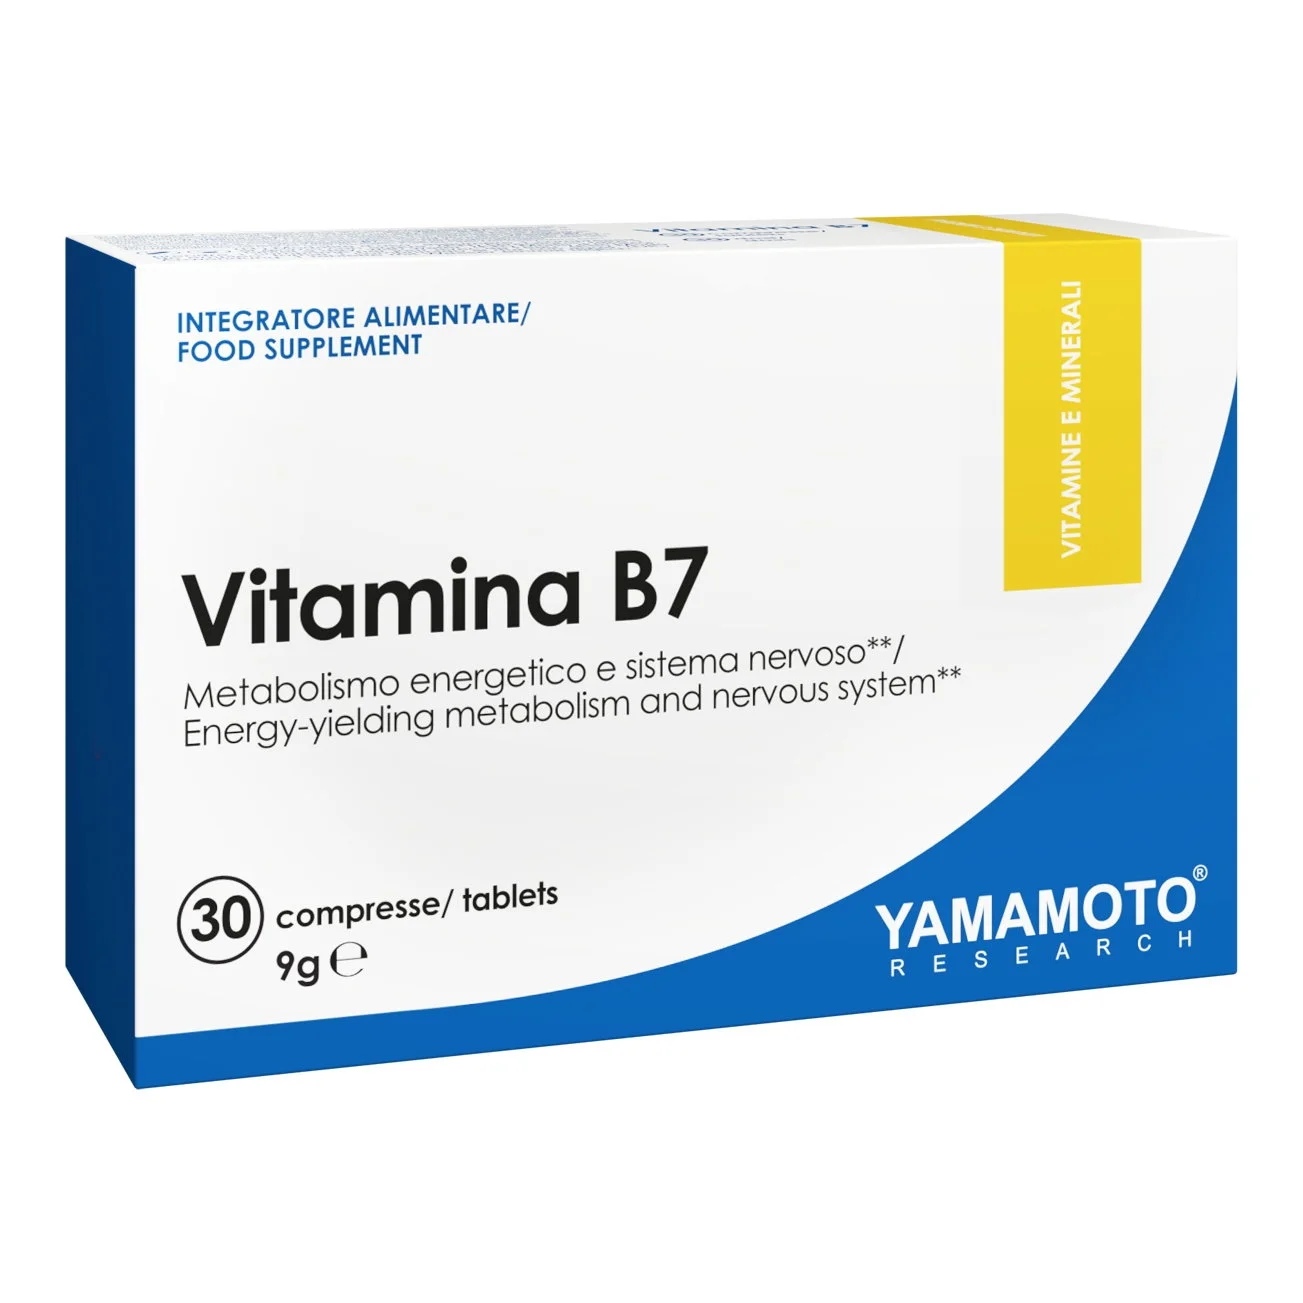 Yamamoto Natural Series Vitamina B7 / 30 tablets